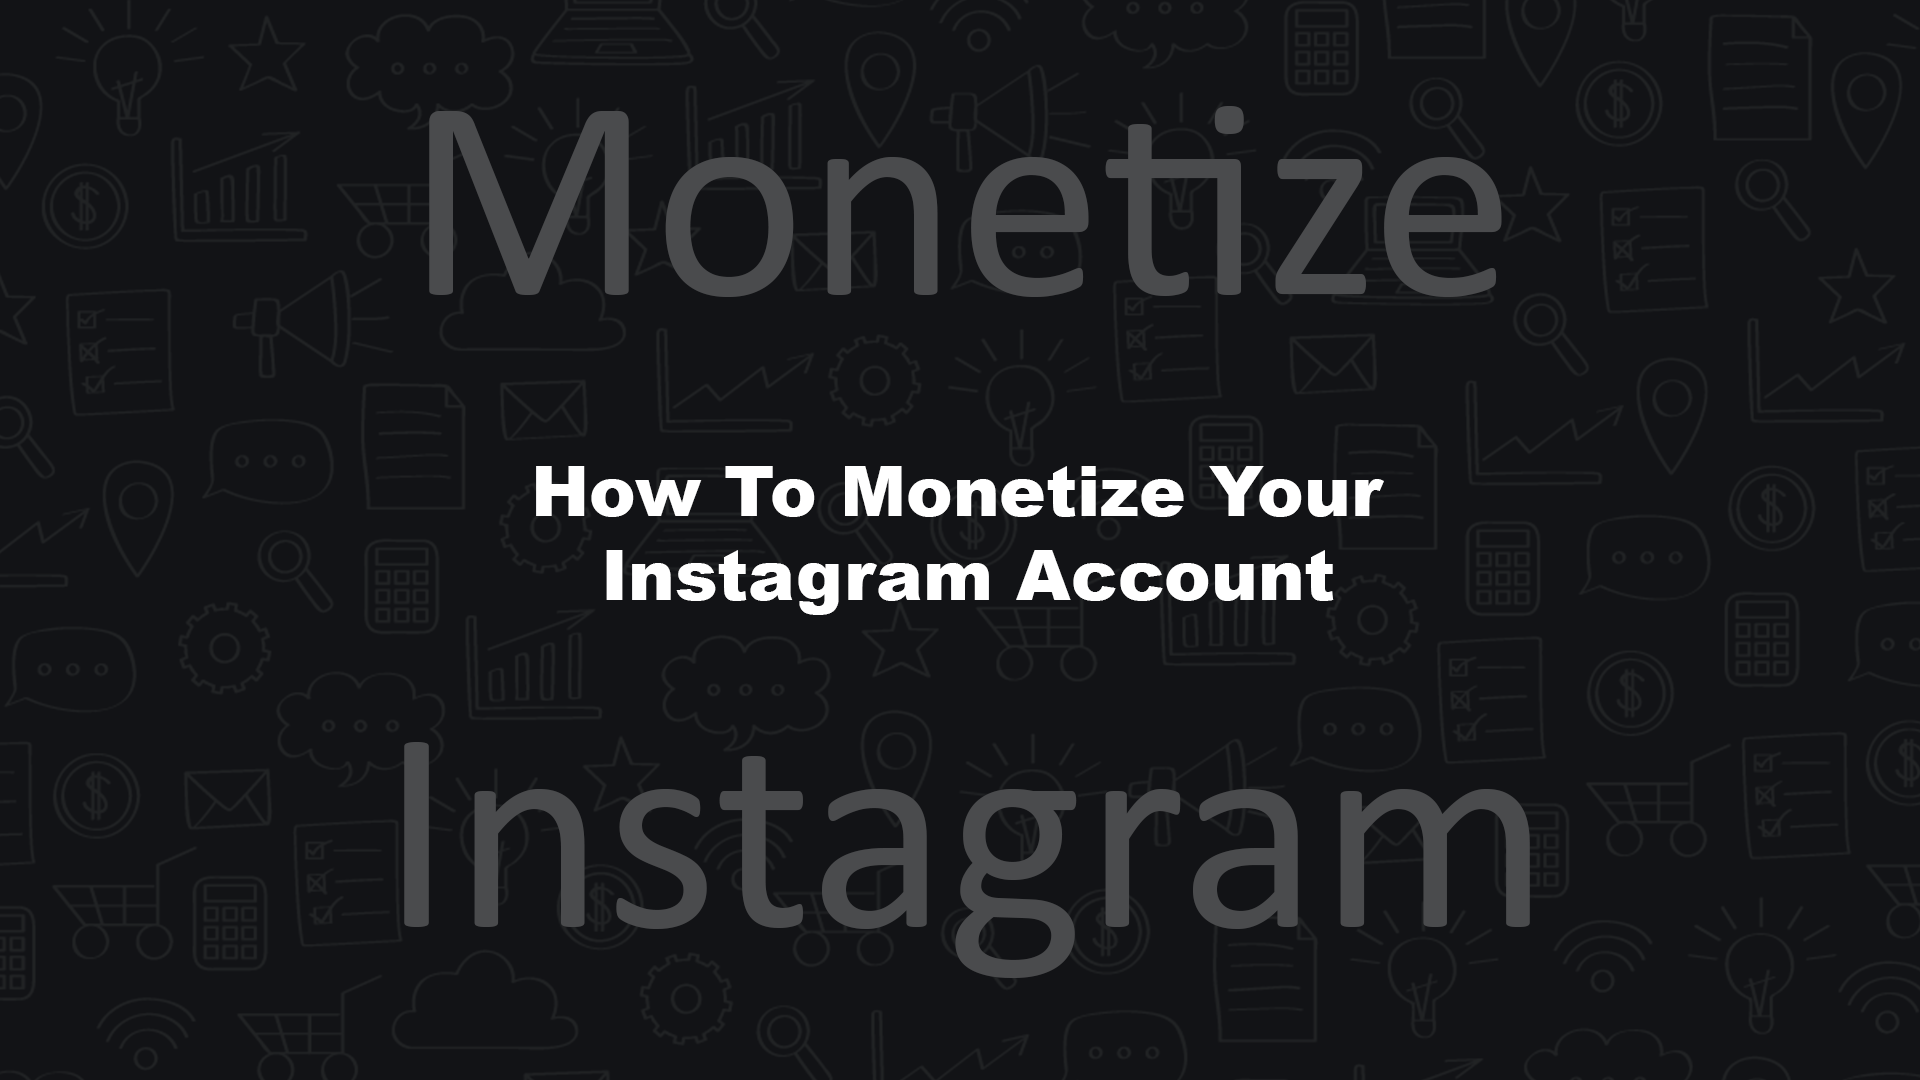 Monetize Your Instagram Account